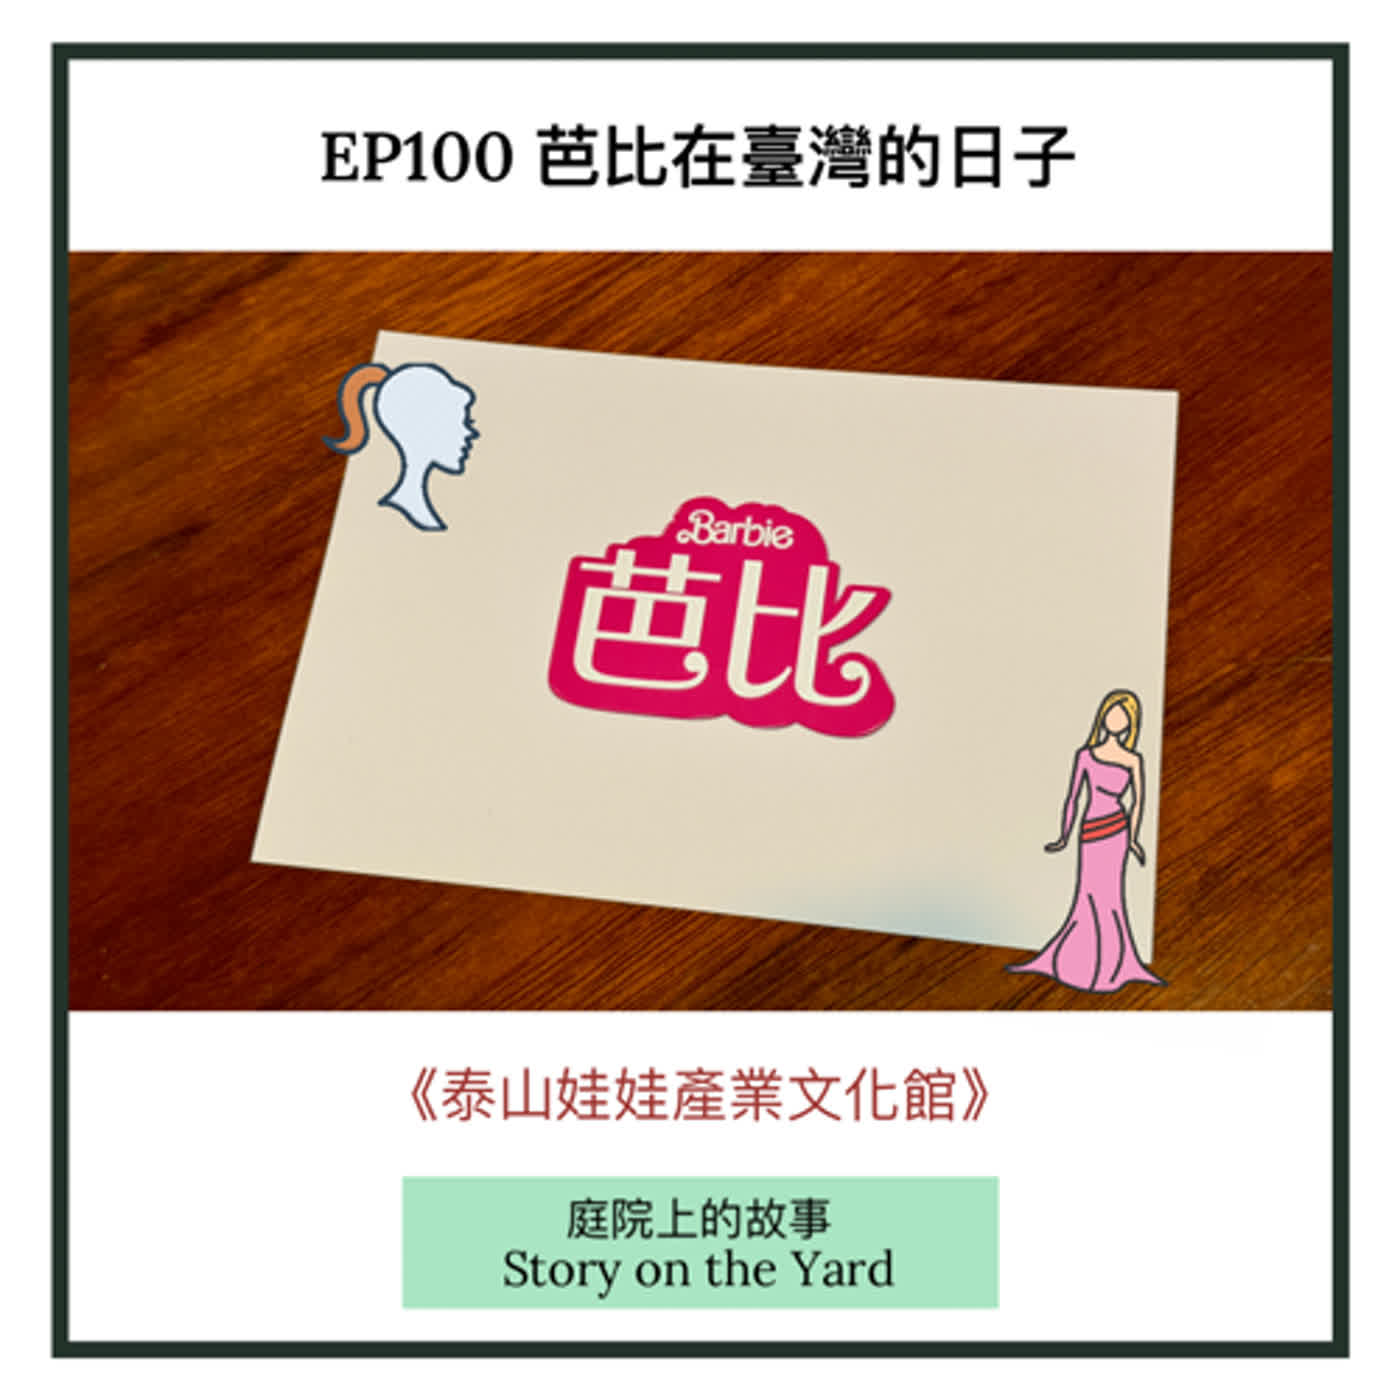 EP100 芭比在台灣：《泰山娃娃產業文化館》